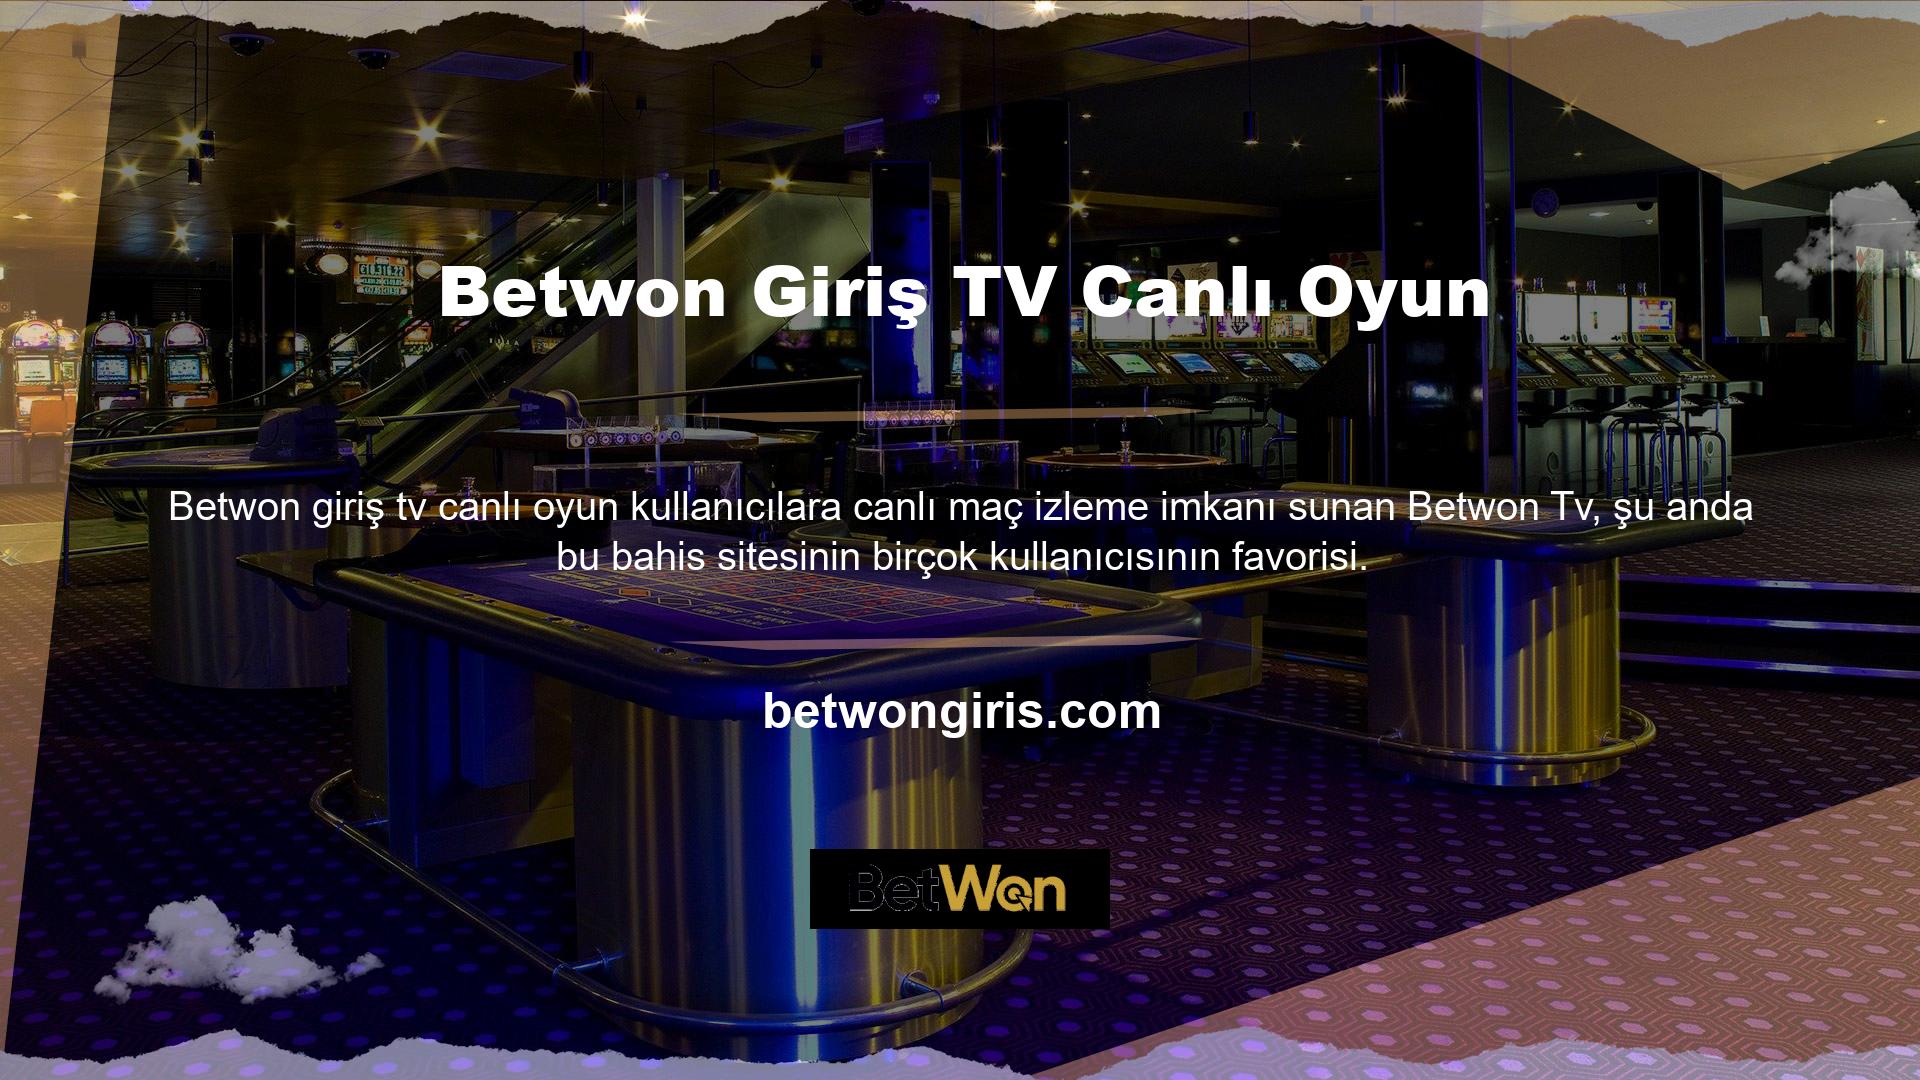 Betwon TV genel olarak alt lig bahislerine odaklanıyor ve sitenin bu bölümünde birçok maçı canlı olarak yayınlıyor